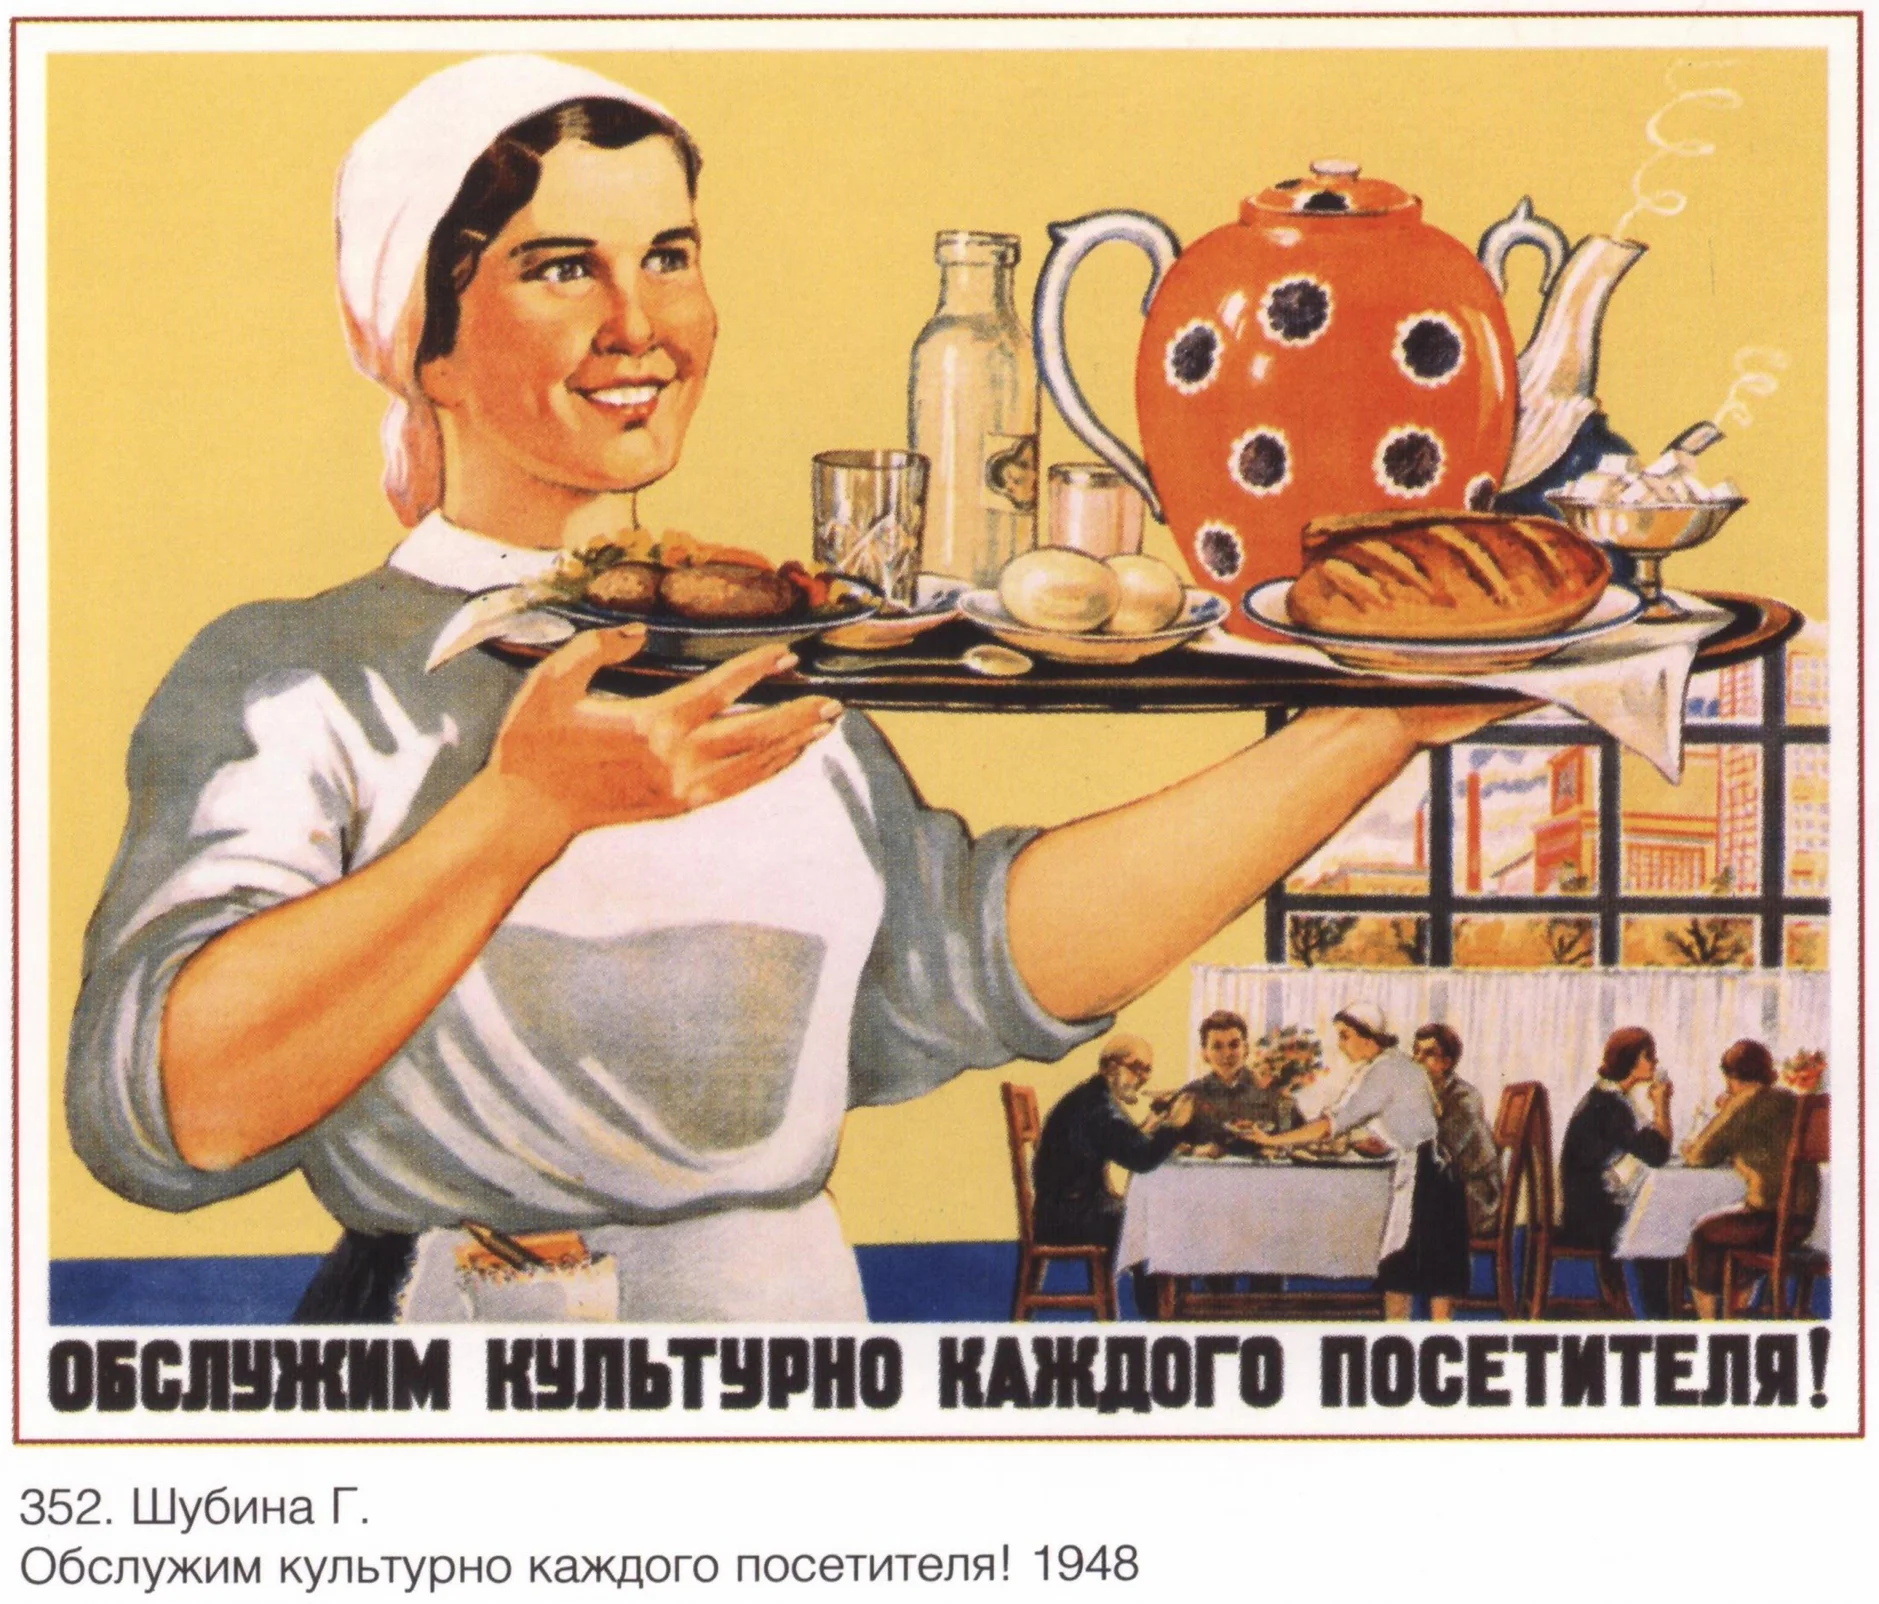 Soviet cafeterias